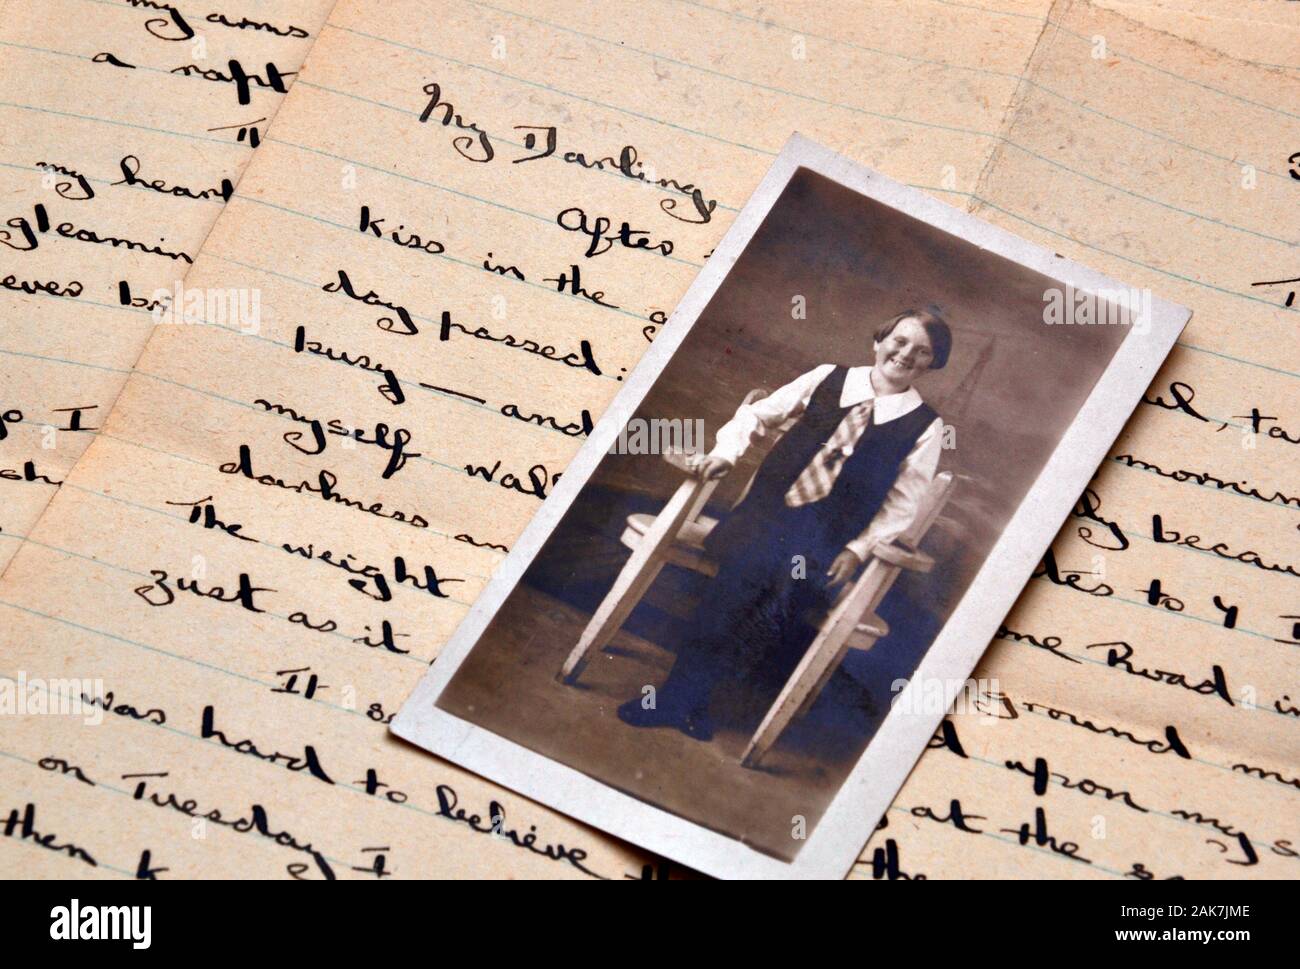 Ein altes schwarz-weiß Foto eines Jugendmädchens handschriftlich auf einem alten 1940er schreiben, das beginnt: "My Darling" Stockfoto